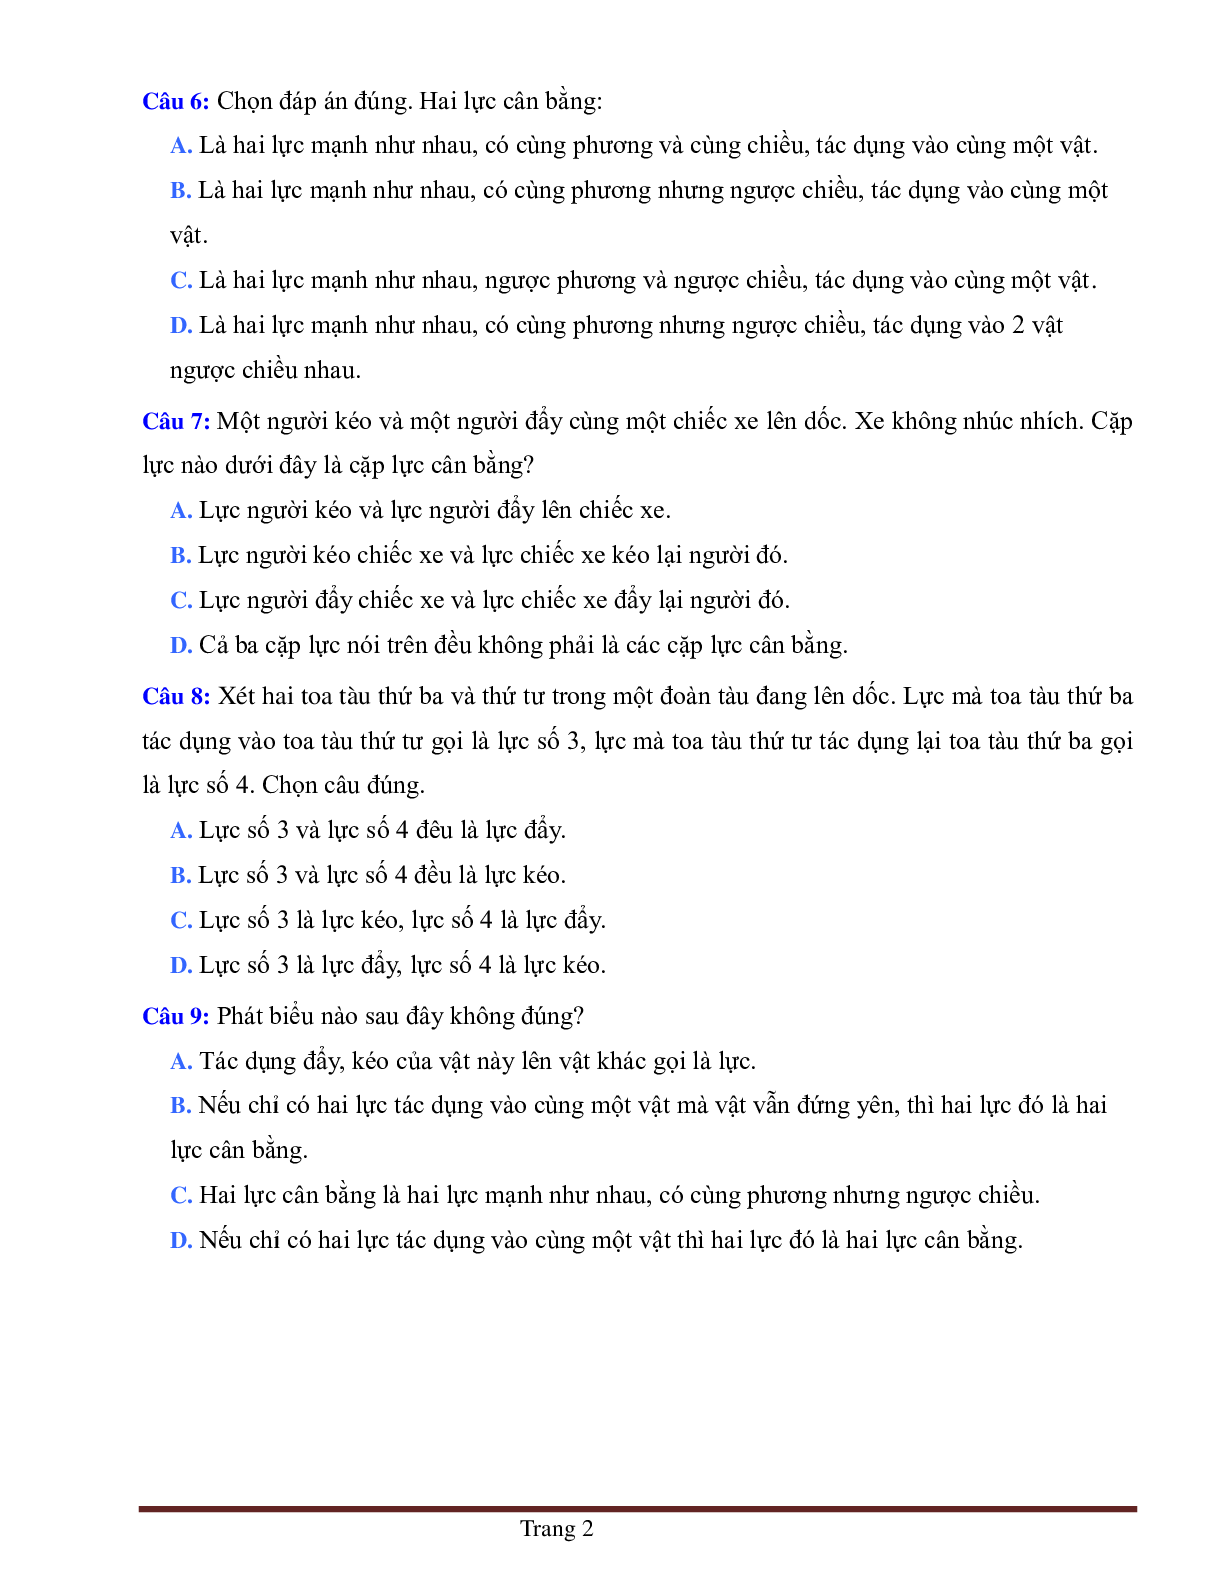 BÀI TẬP TRẮC NGHIỆM MÔN VẬT LÝ LỚP 6 BÀI 6: LỰC- HAI LỰC CÂN BẰNG CÓ ĐÁP ÁN (trang 2)